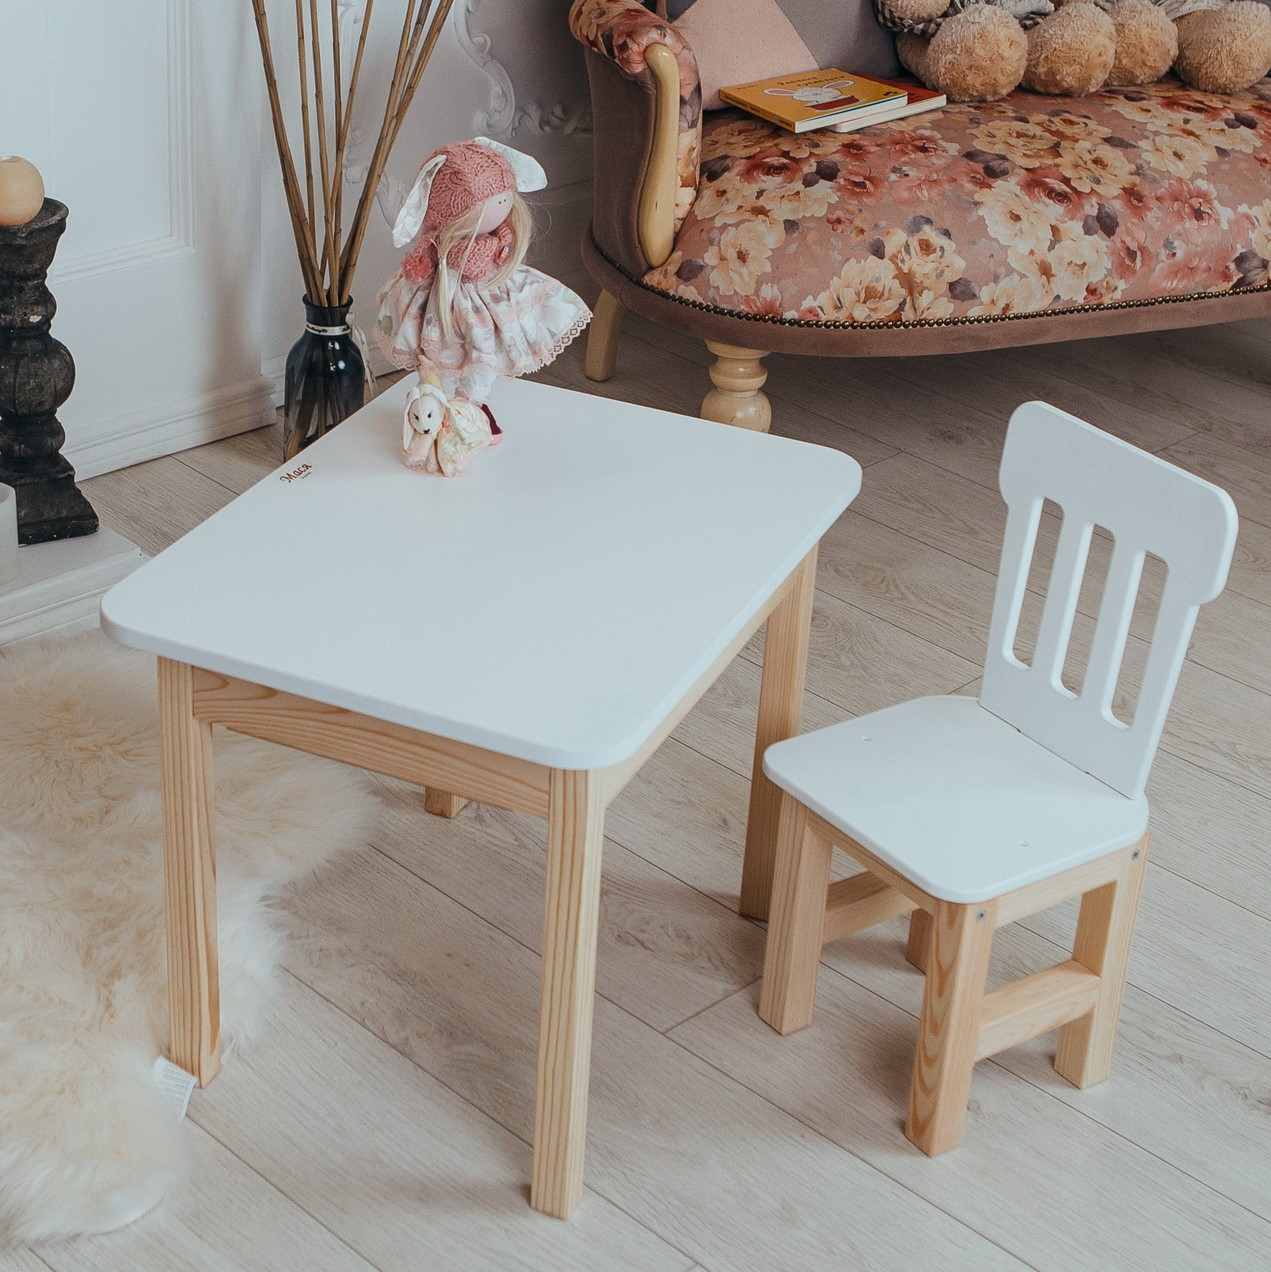 Білий дерев'яний столик і стільчик дитячий із шухлядою. Білосніжний дитячий столик для занять, ігор, їжі